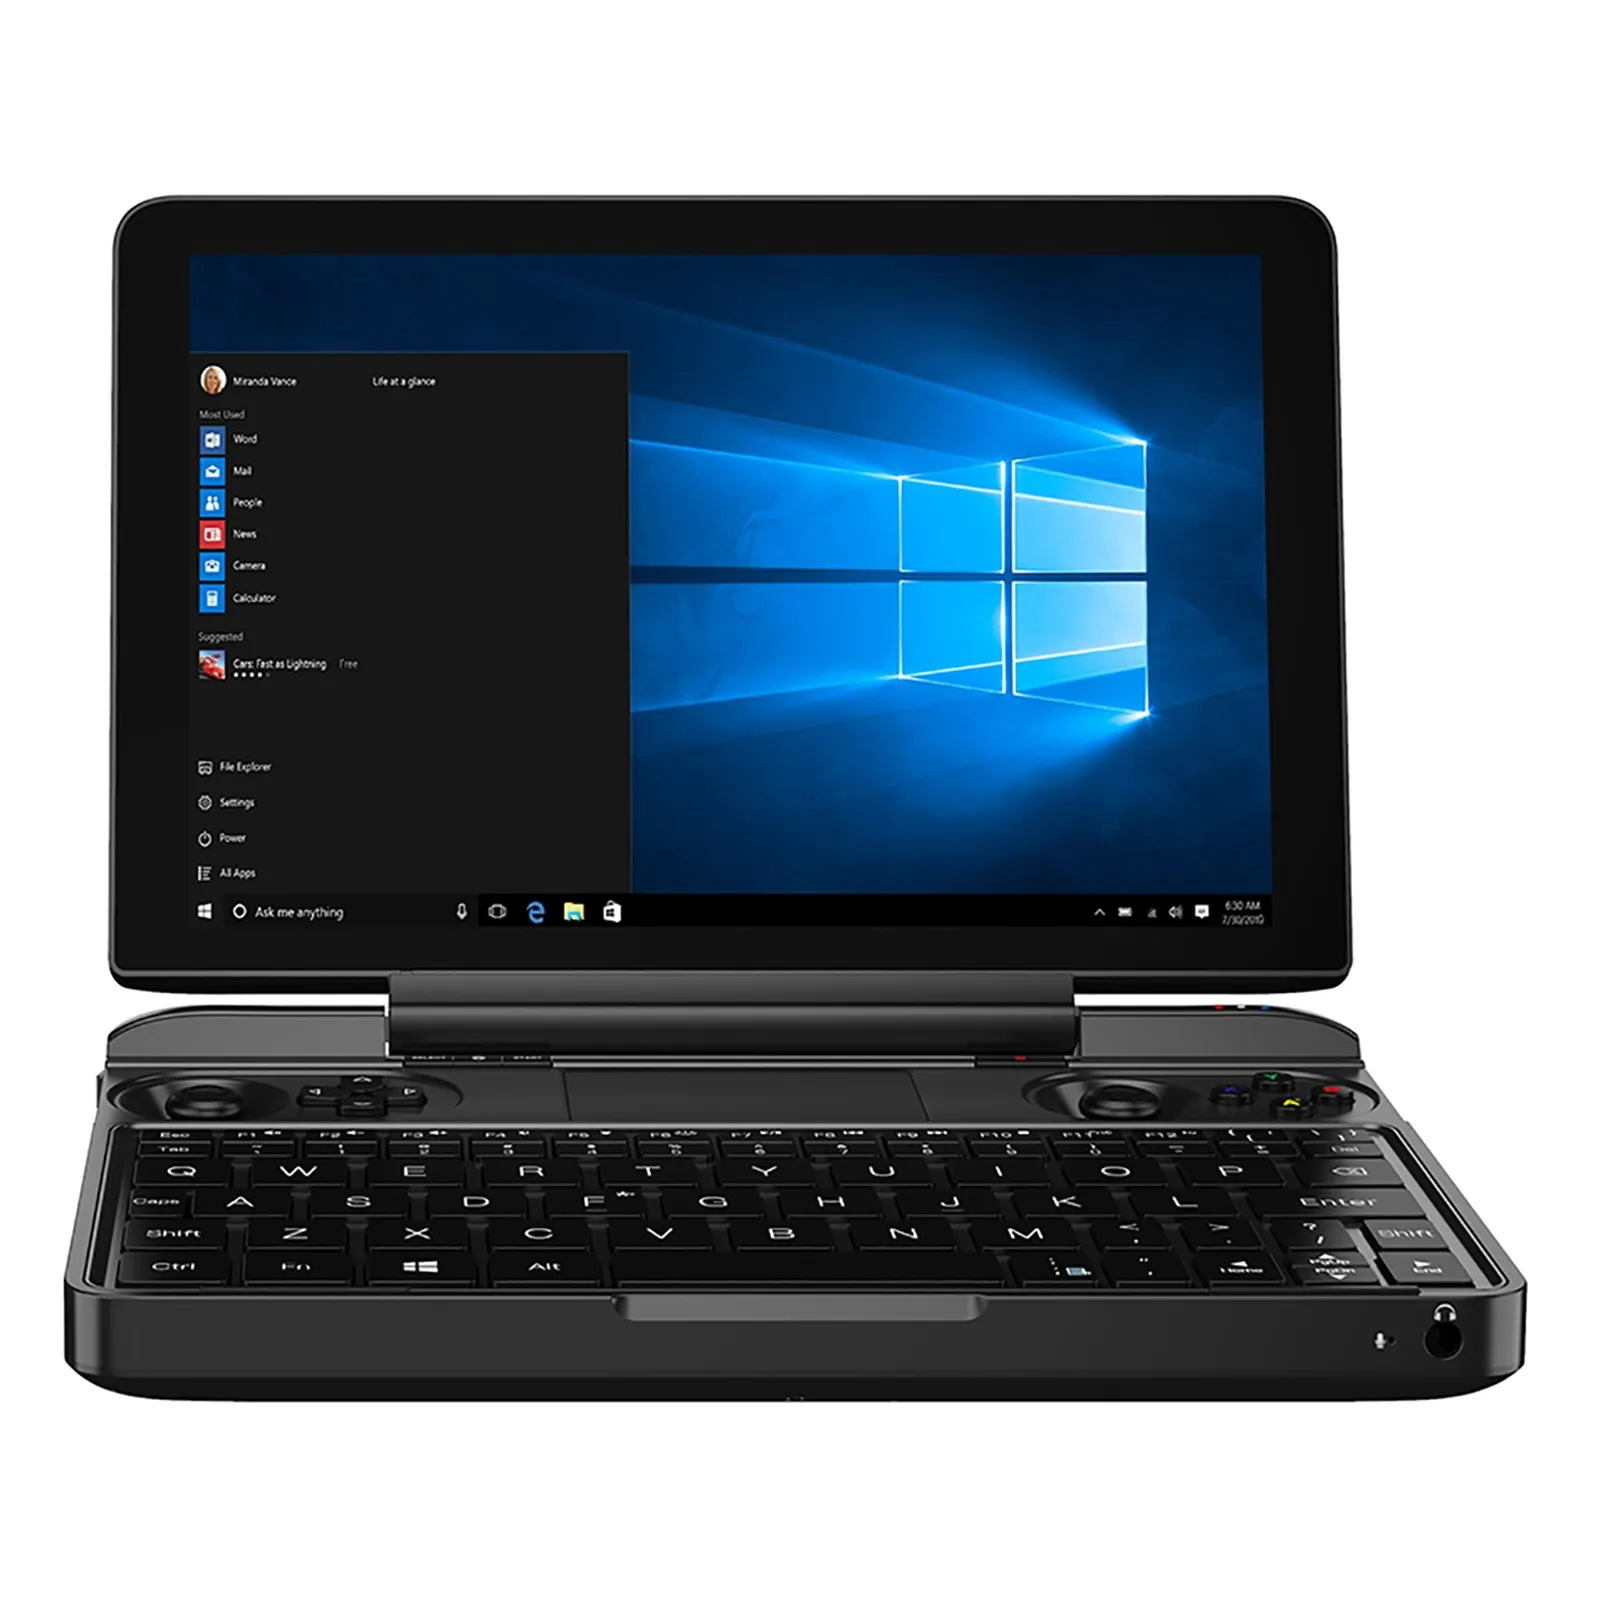 

Оригинальная портативная игровая консоль Gpd Win Max In-tel Core I7 1195G7, игровой плеер, геймпад, планшет на Windows 10, мини-ПК, компьютер, ноутбук